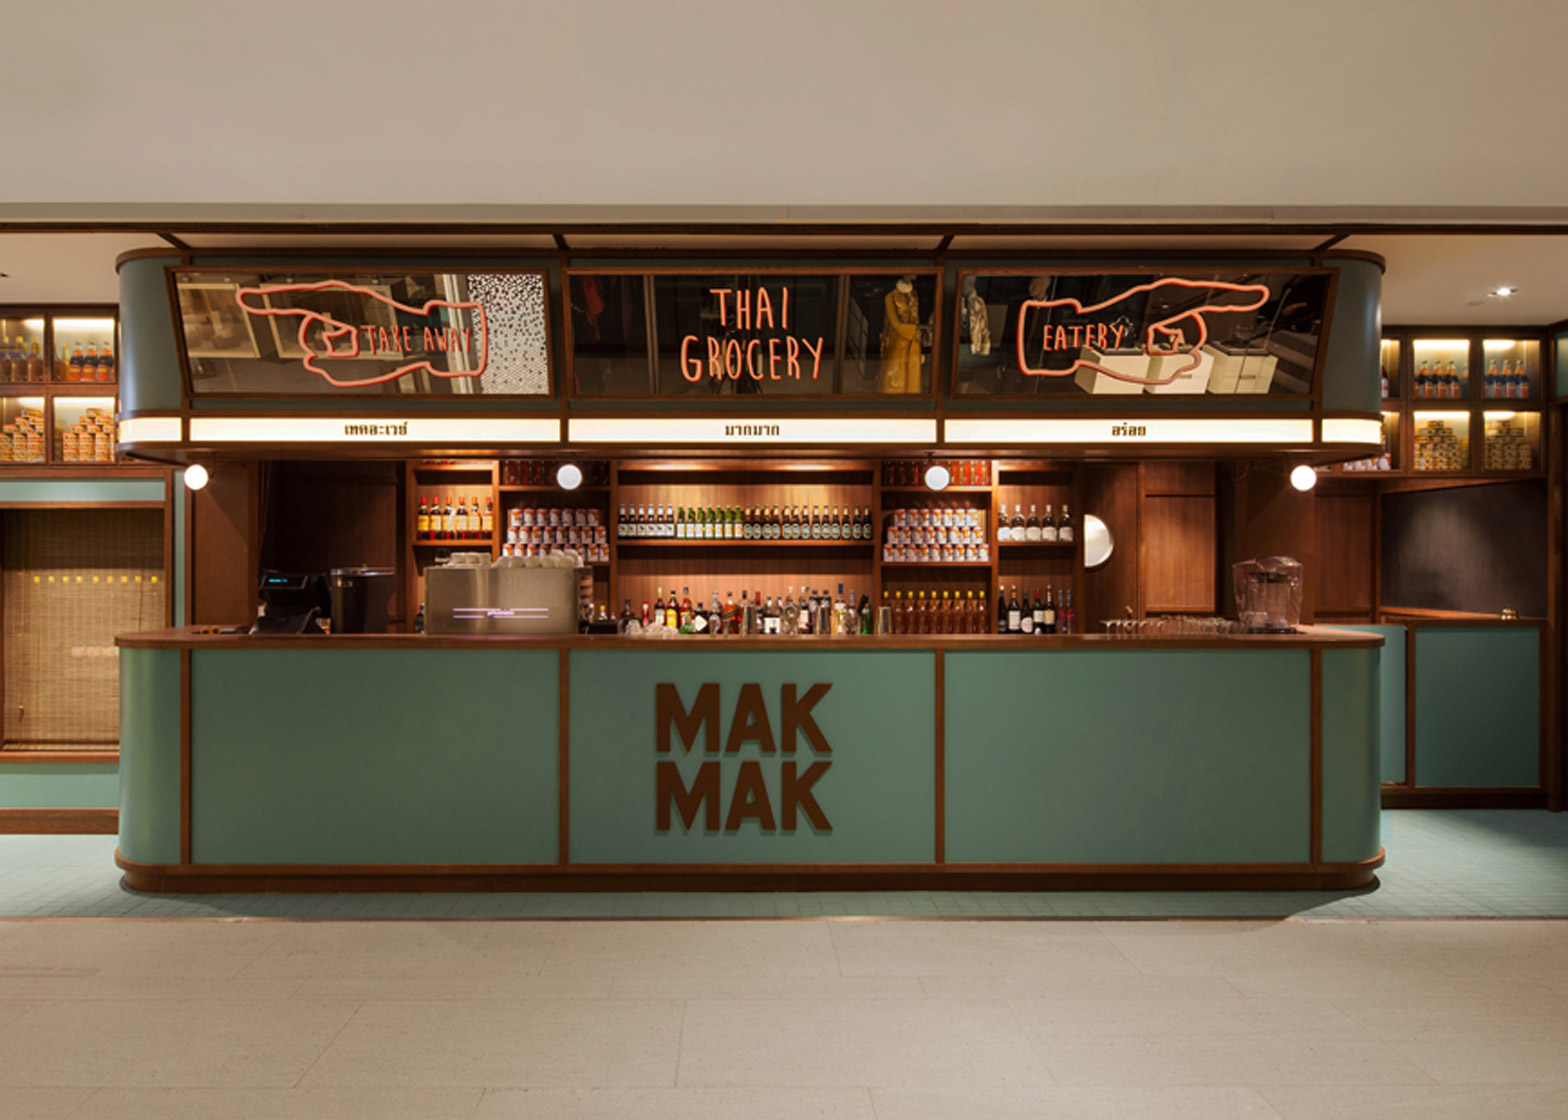 mak-mak-thai-restaurant-nc-design-architecture_dezeen_1568_0